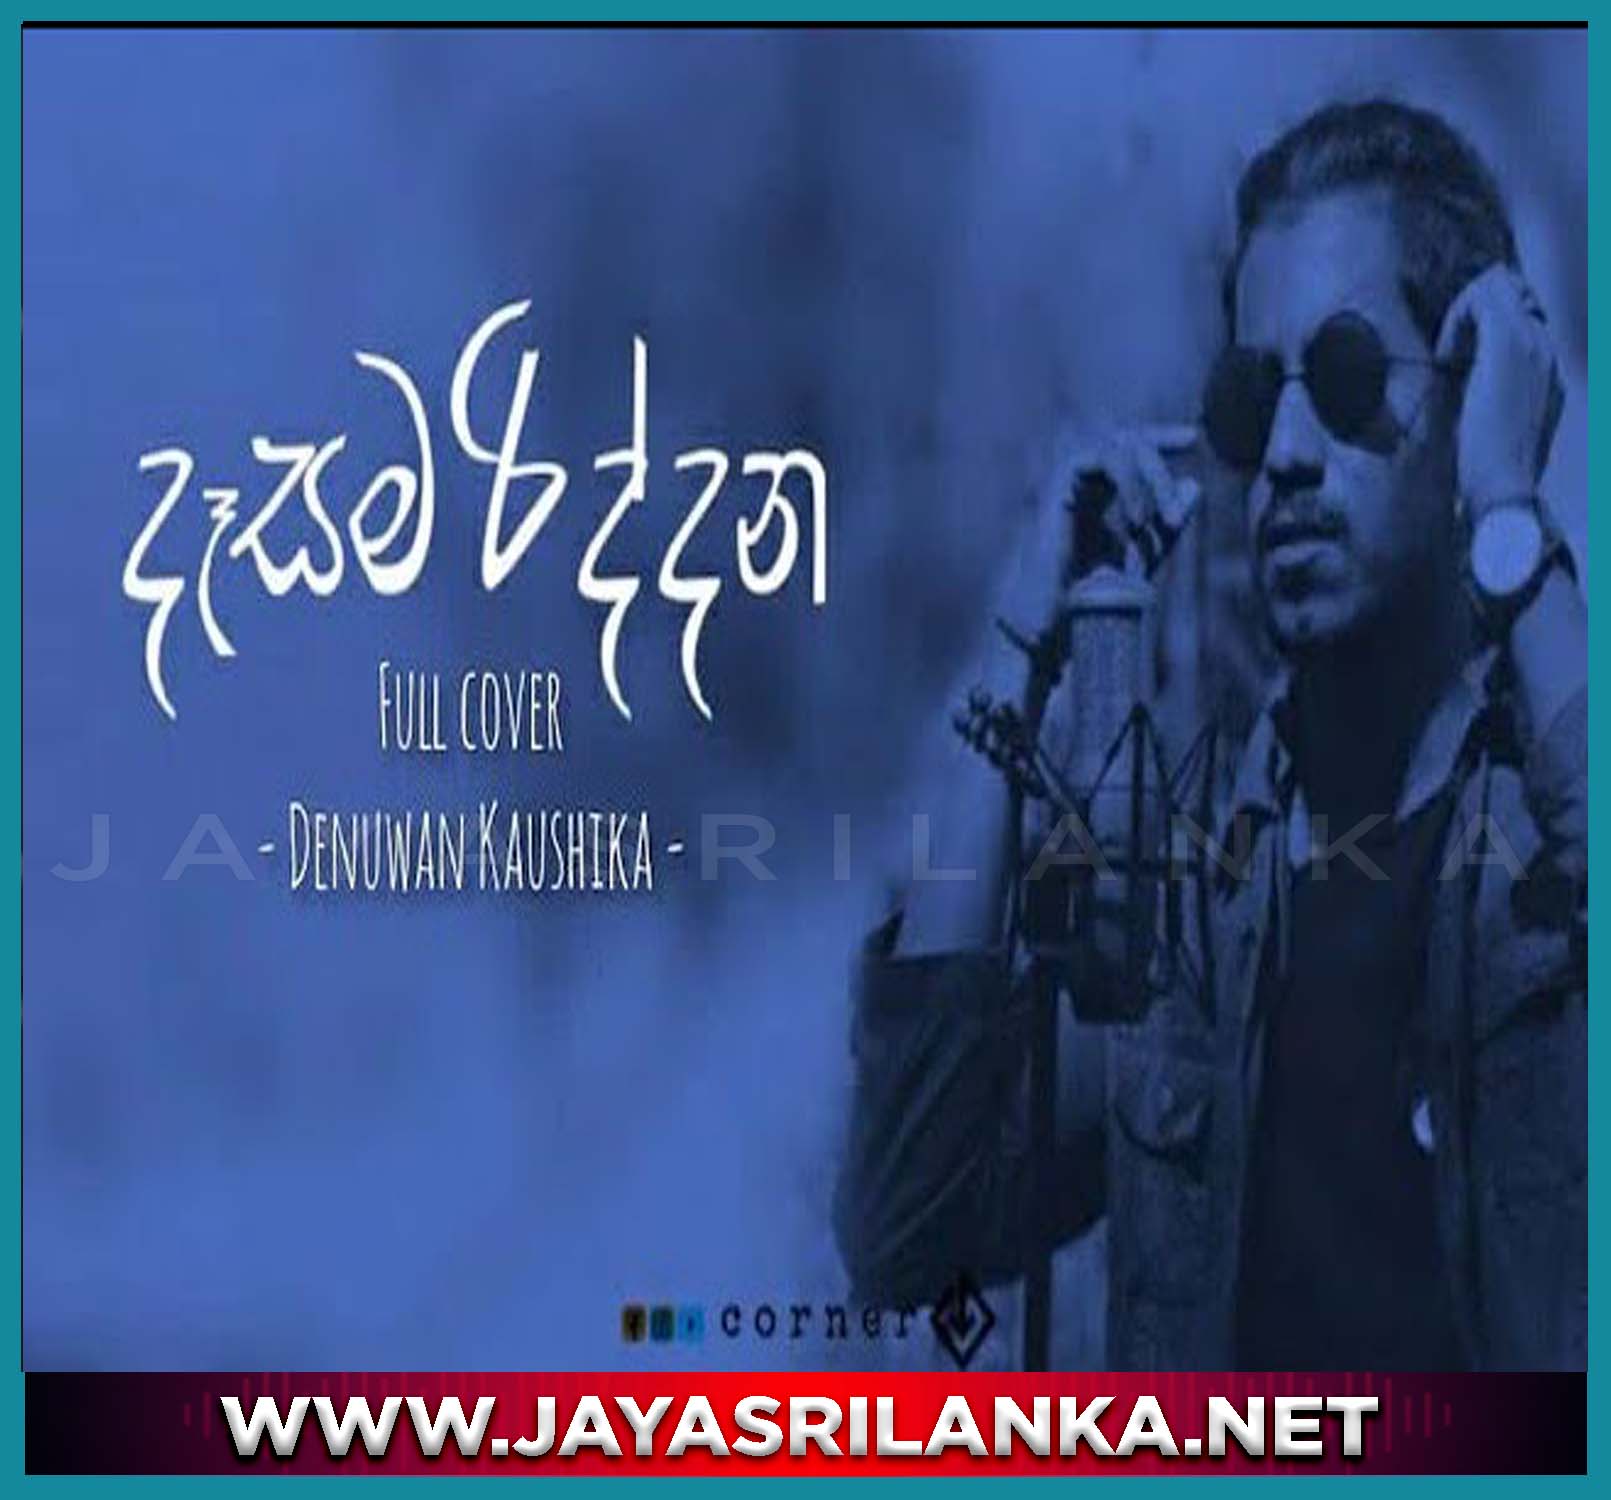 Dasama Riddana Sinhala Cover Song